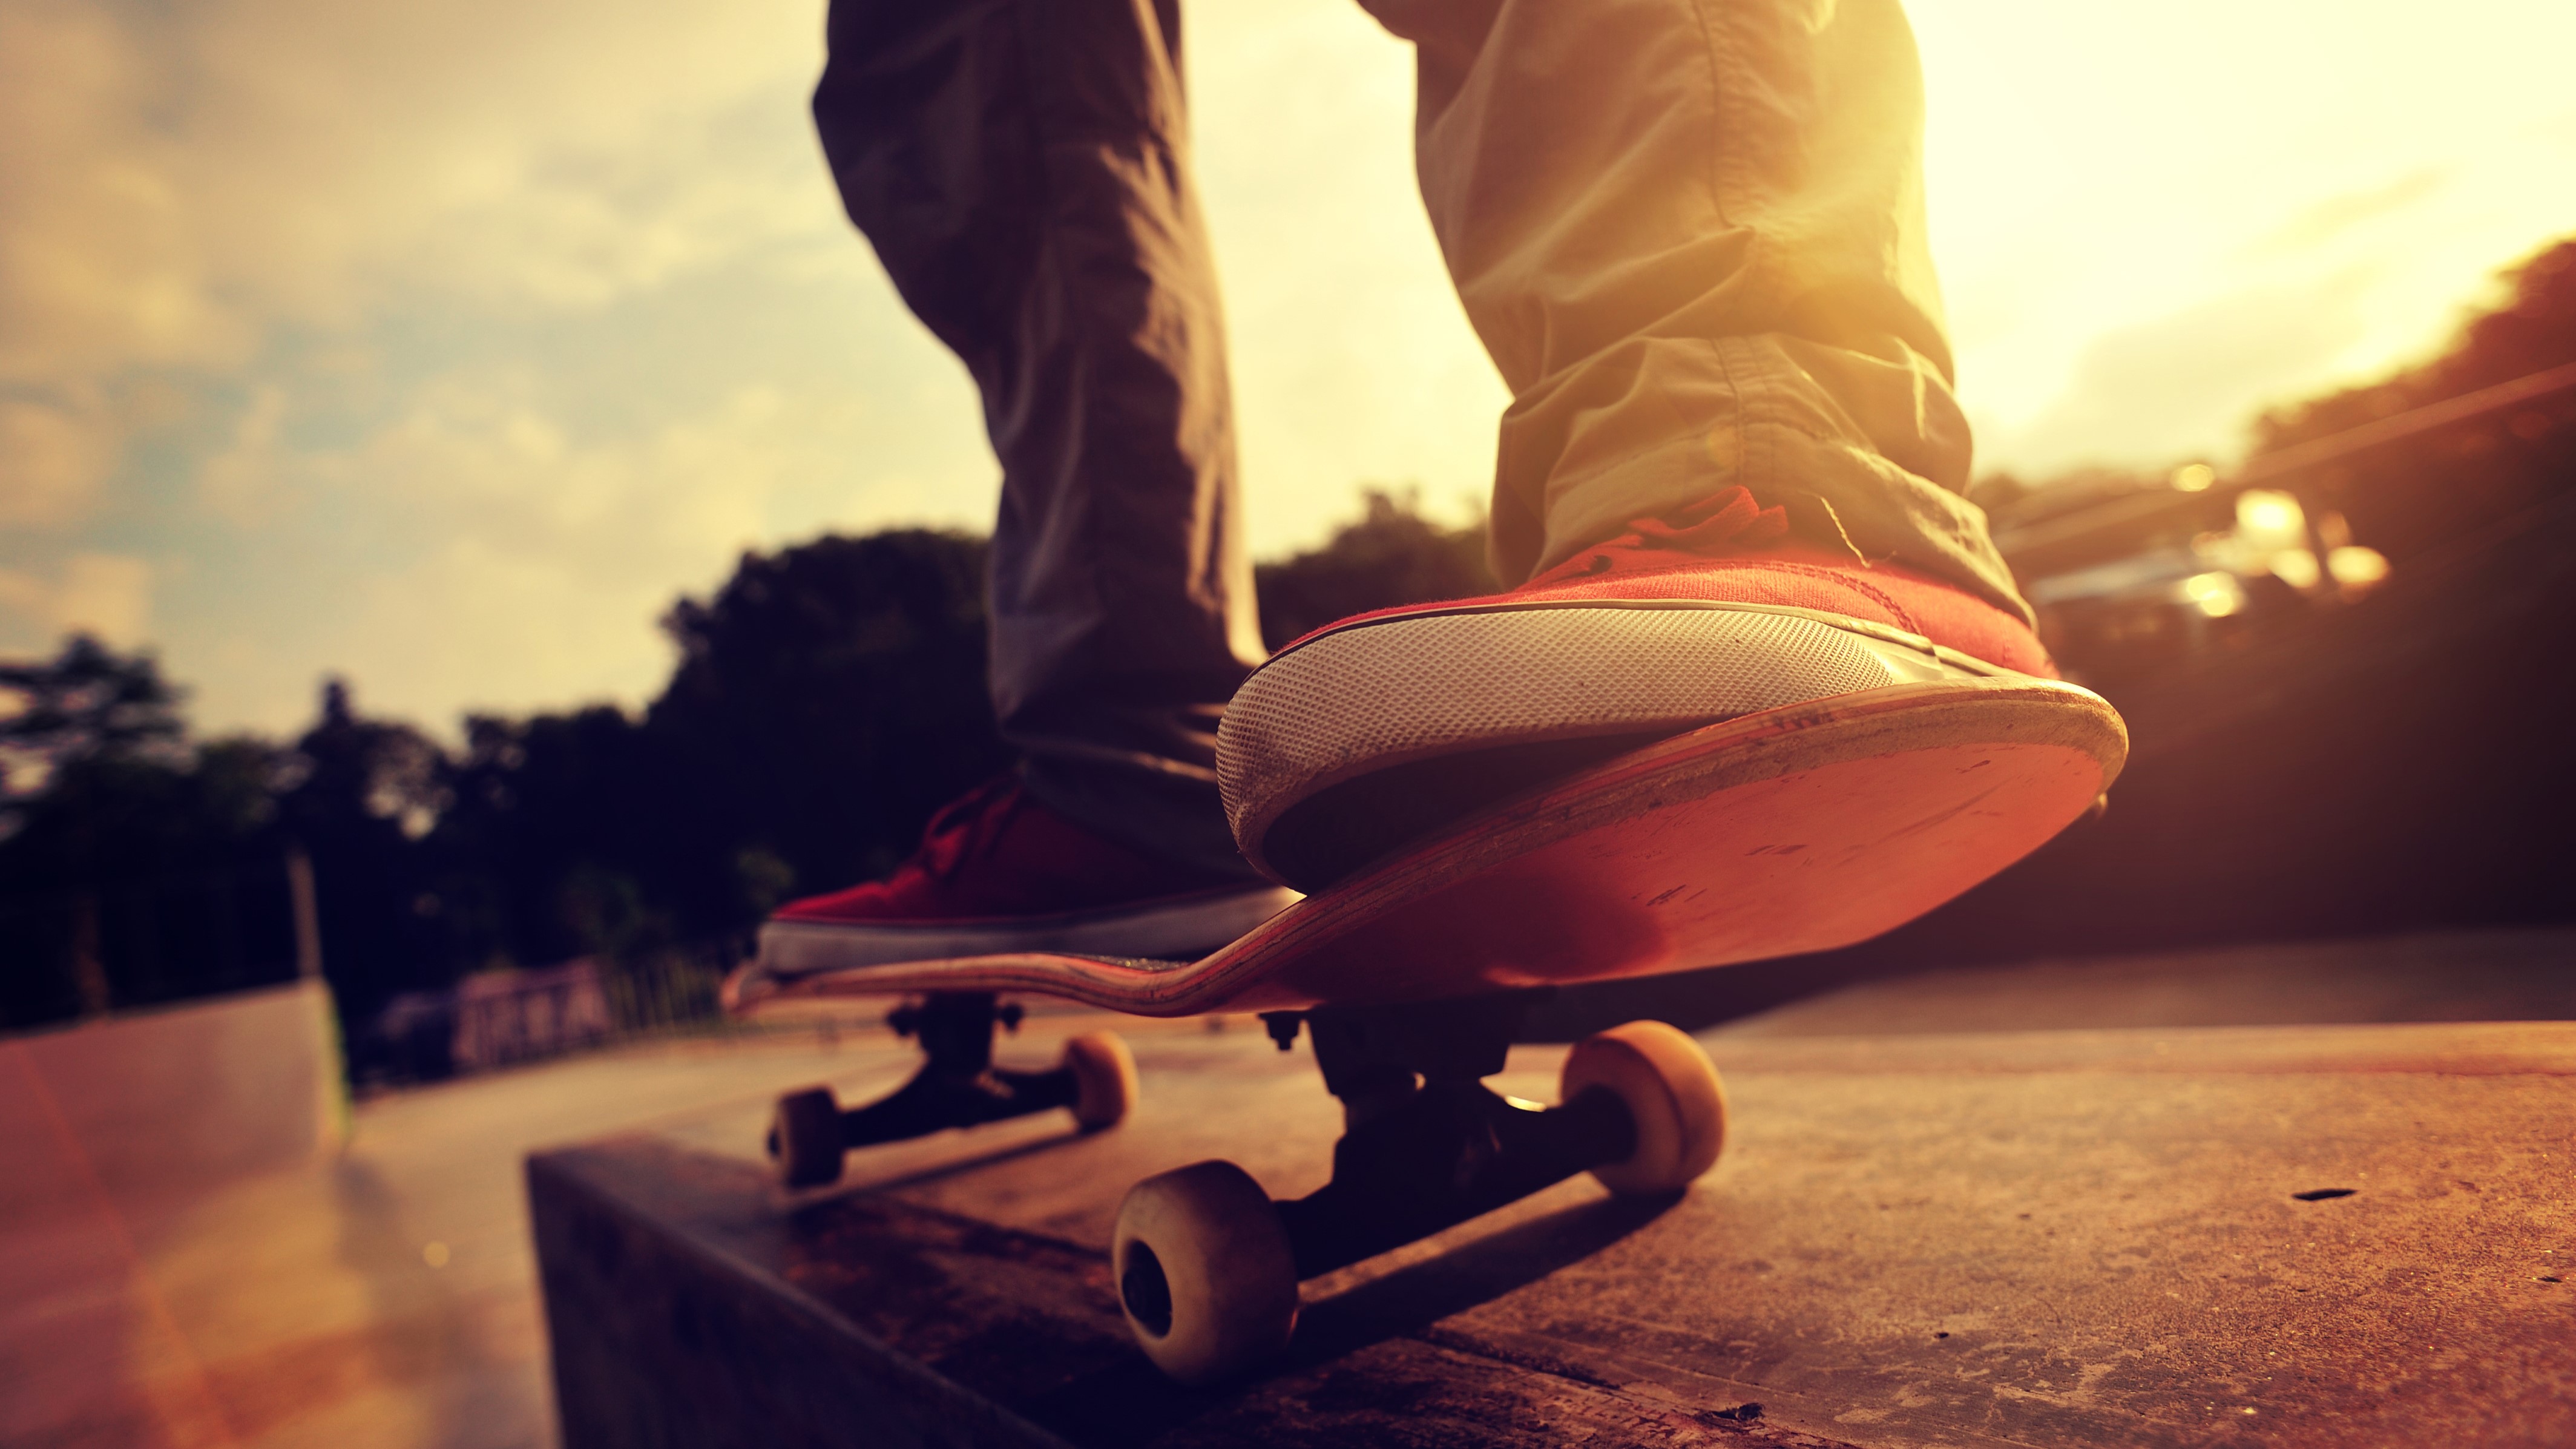 skateboard skater board ride